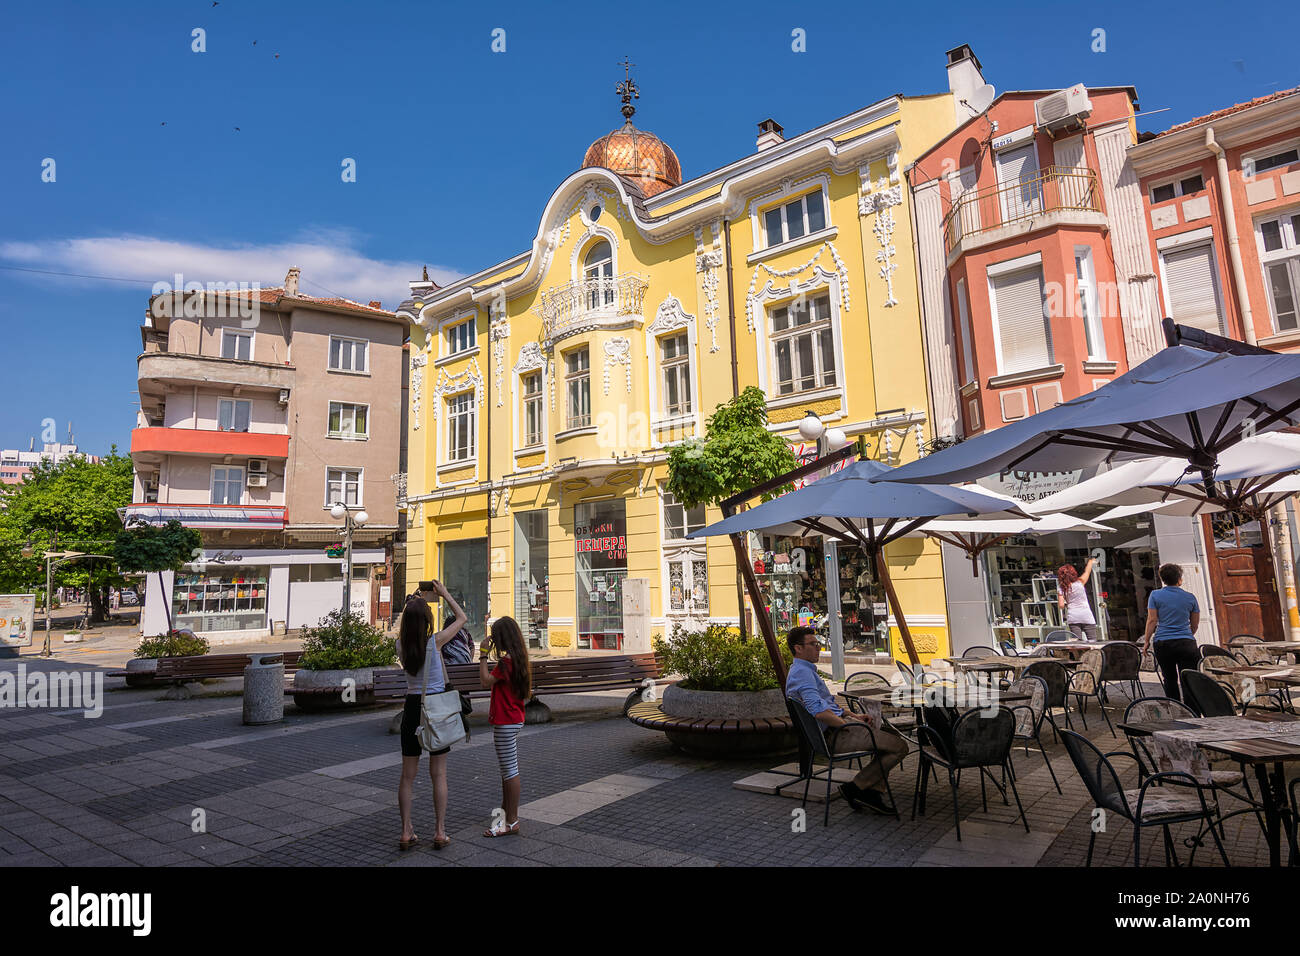 Burgas, Bulgarien - Juni 21, 2019: Fußgänger-Kurs im Zentrum von Burgas, ein Urlaubsort am Schwarzen Meer. Stockfoto